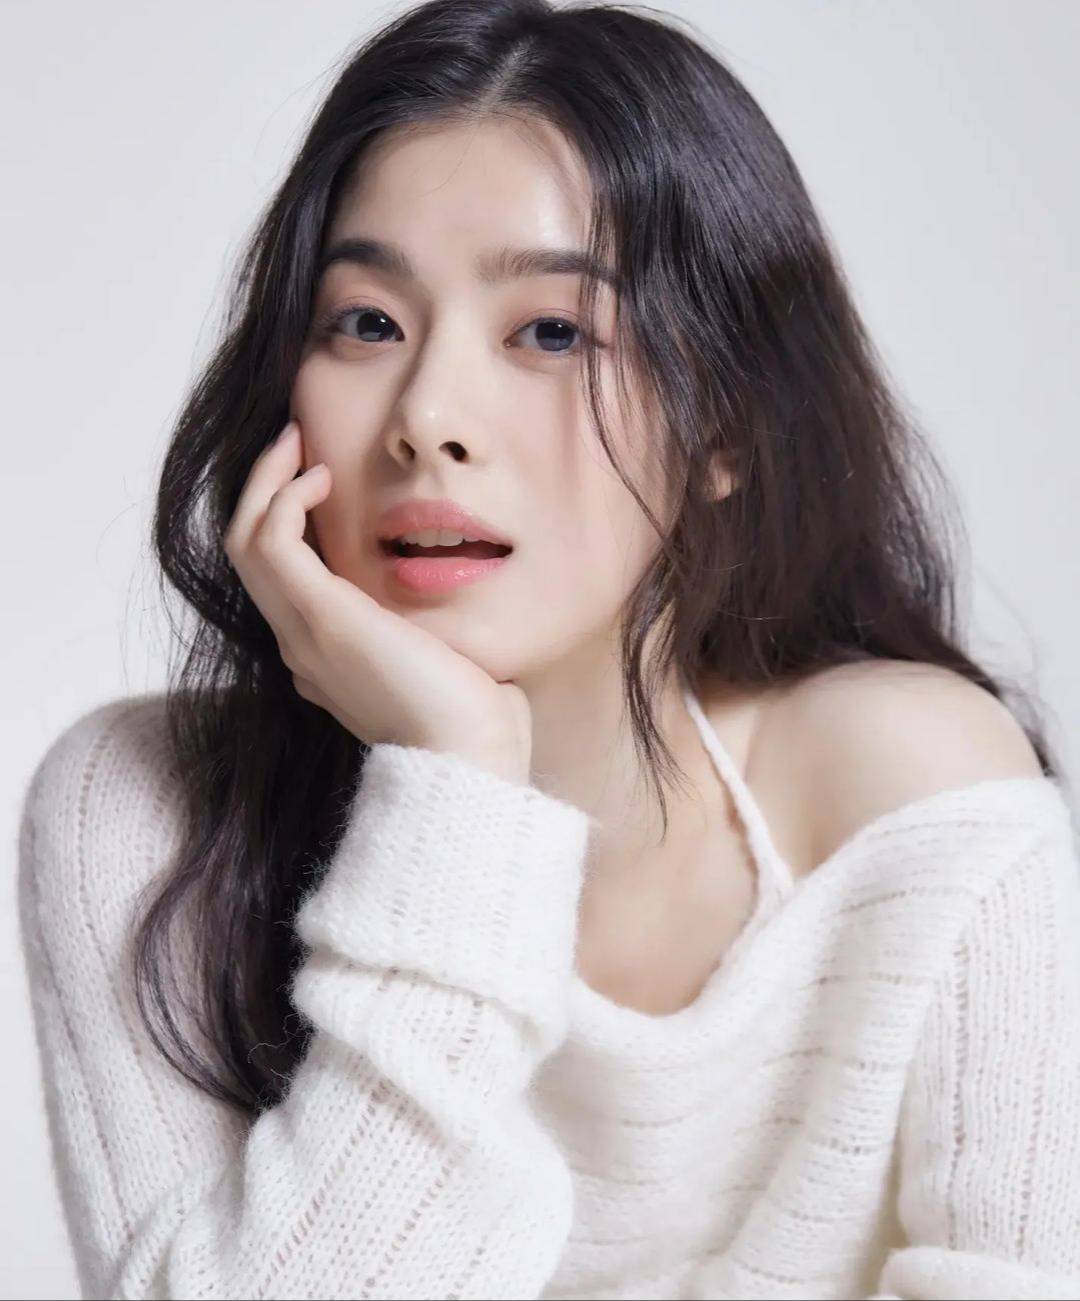 韓國舞者及模特氣質獨具--朱哈努爾(joo  haneul) - 亞洲美女 -